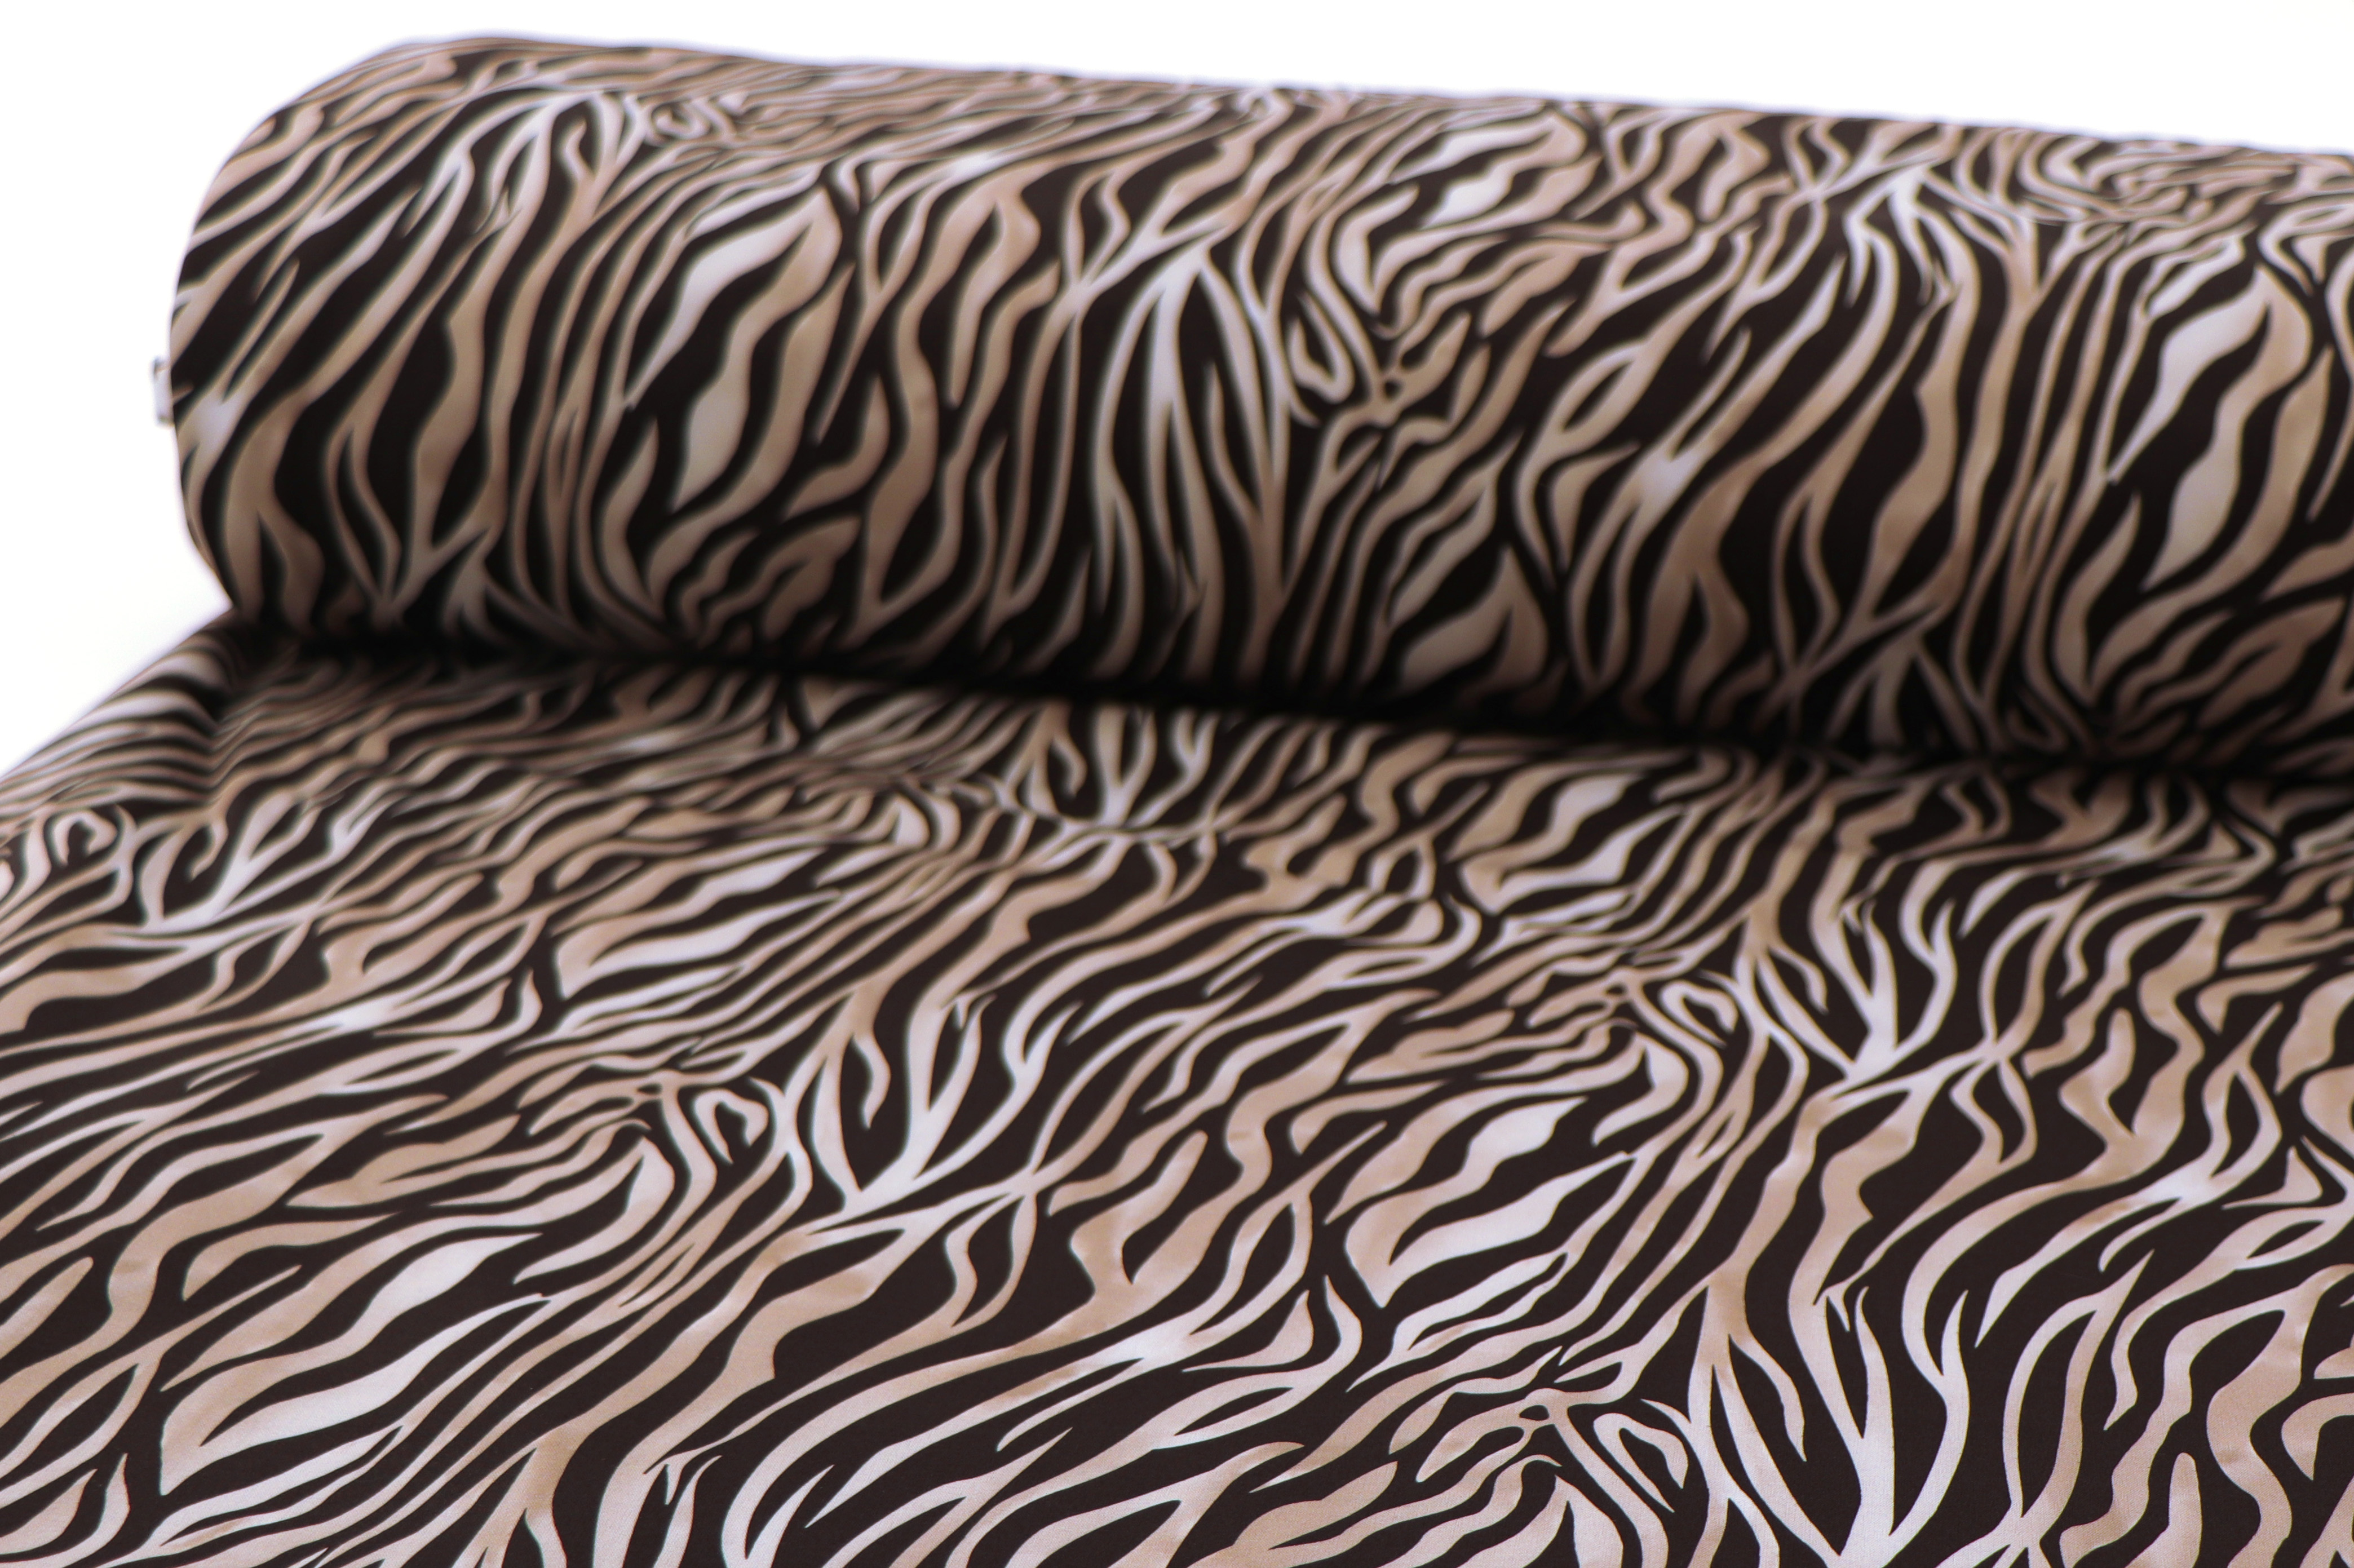 Softshell, stampa digitale, animal skin - zebra